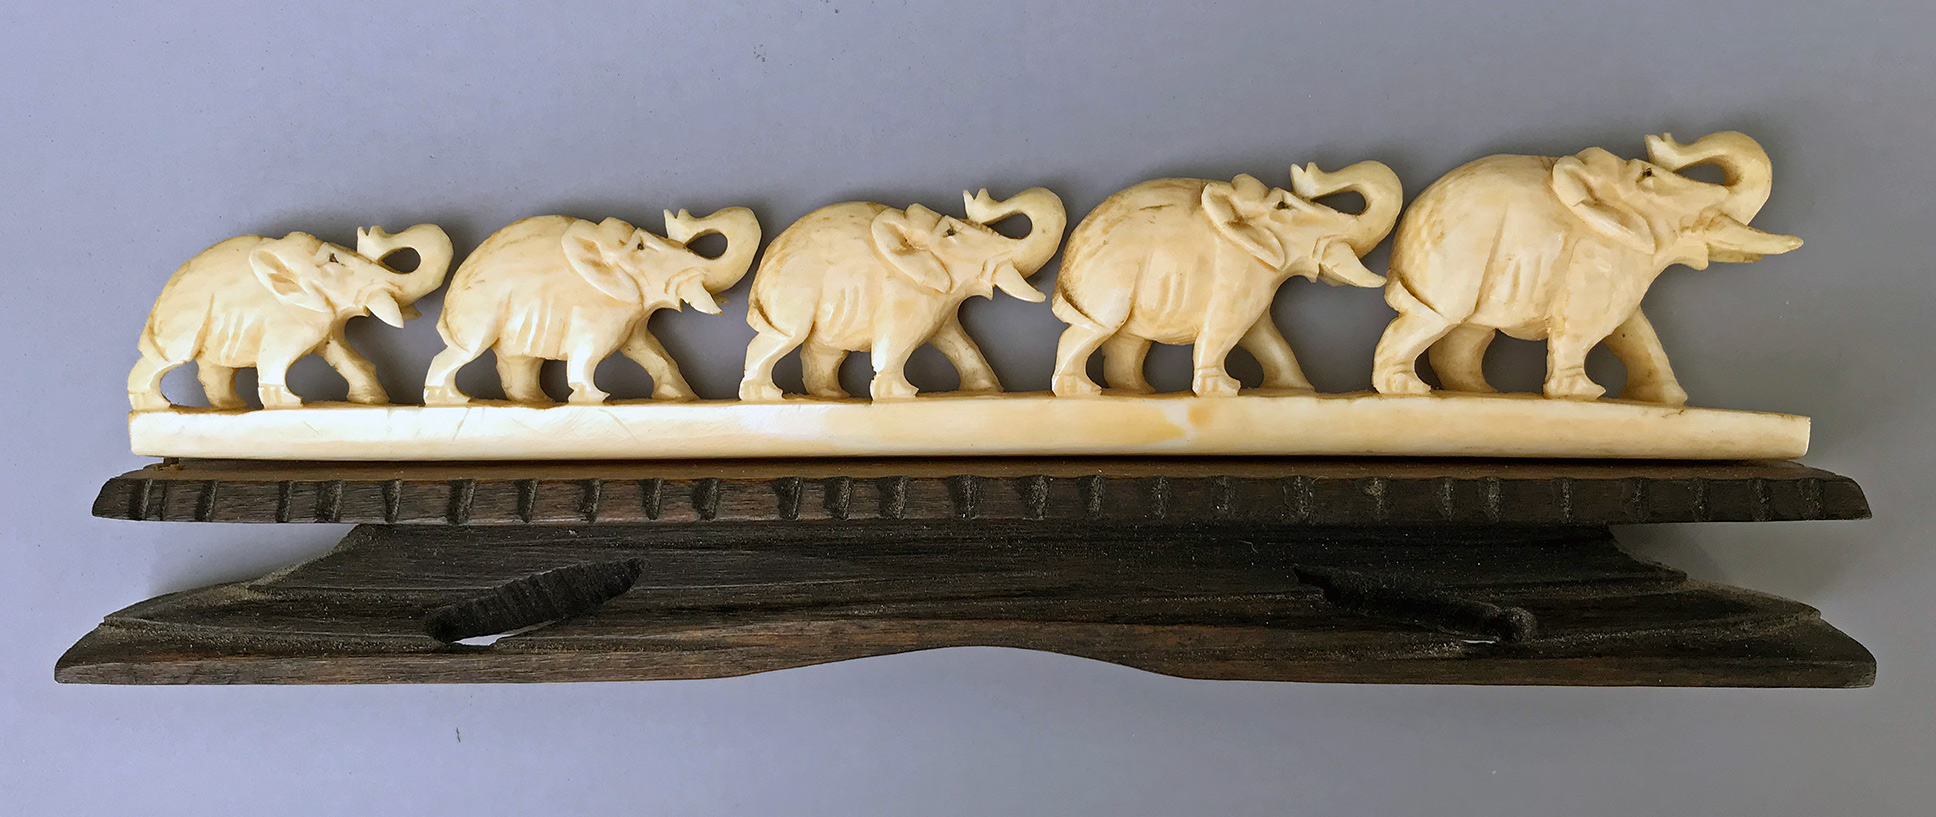 ivory-elephants-side-3-large-IMG_1375.jpg